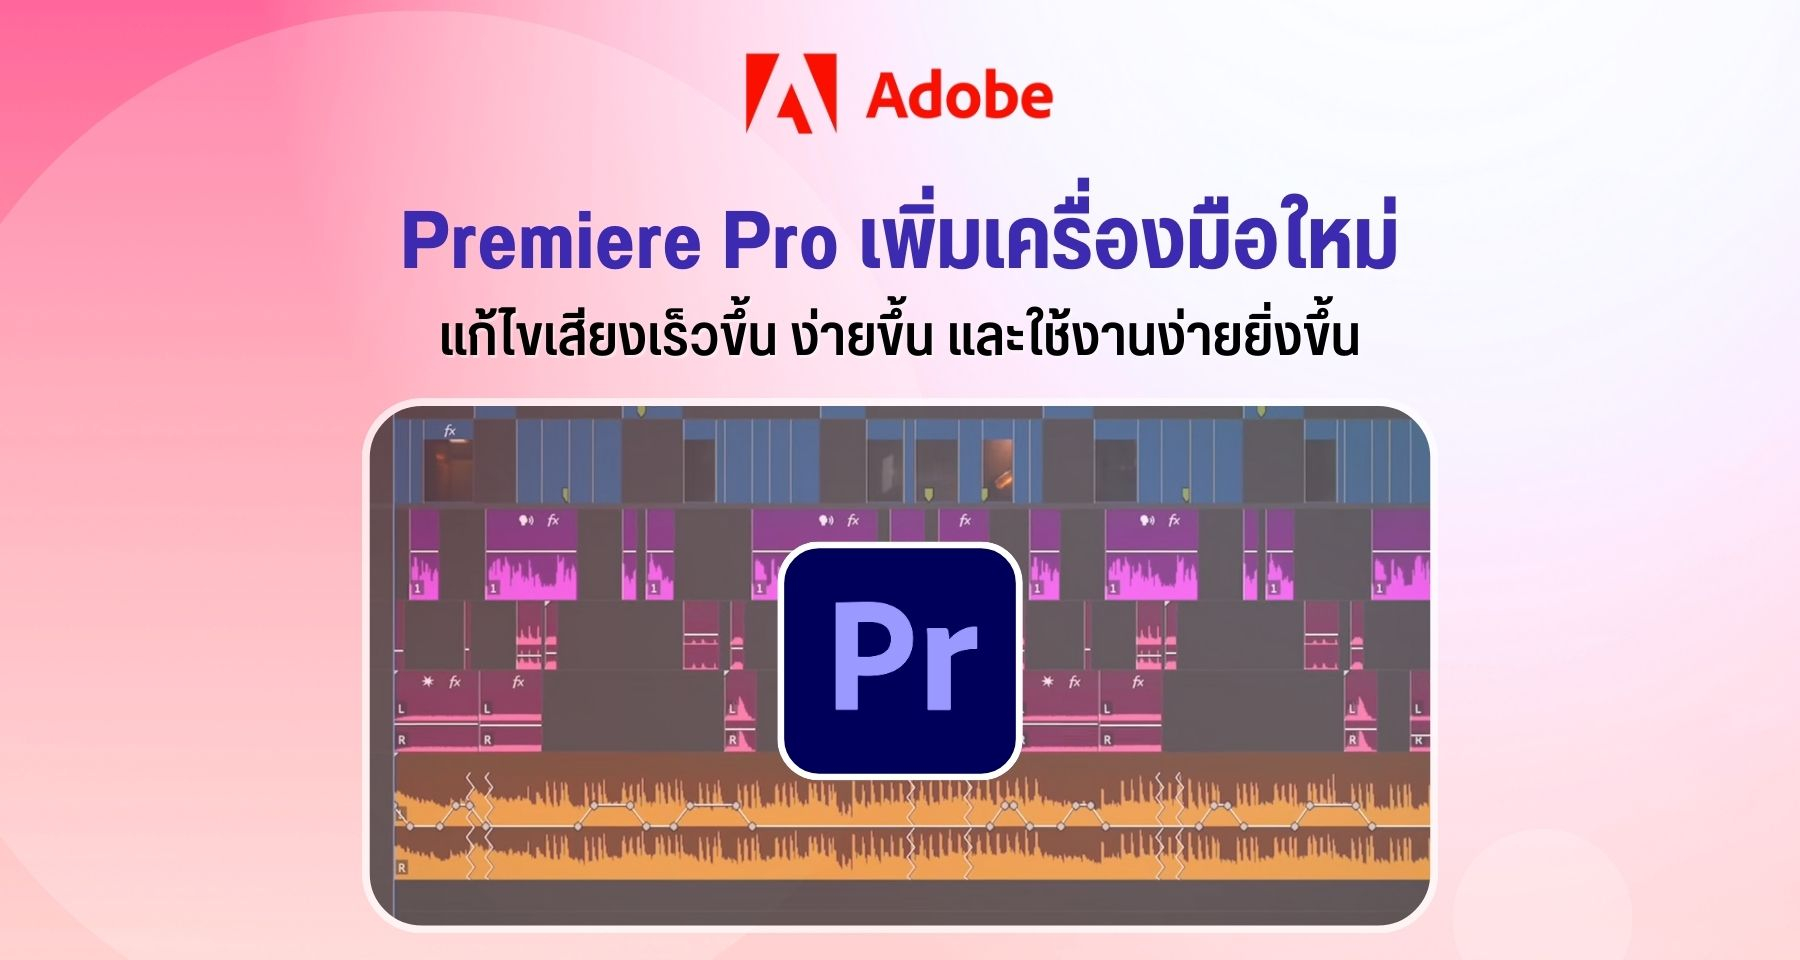 Adobe Premiere Pro เพิ่มเครื่องมือใหม่ แก้ไขเสียงเร็วขึ้น ง่ายขึ้น และใช้งานง่ายยิ่งขึ้น